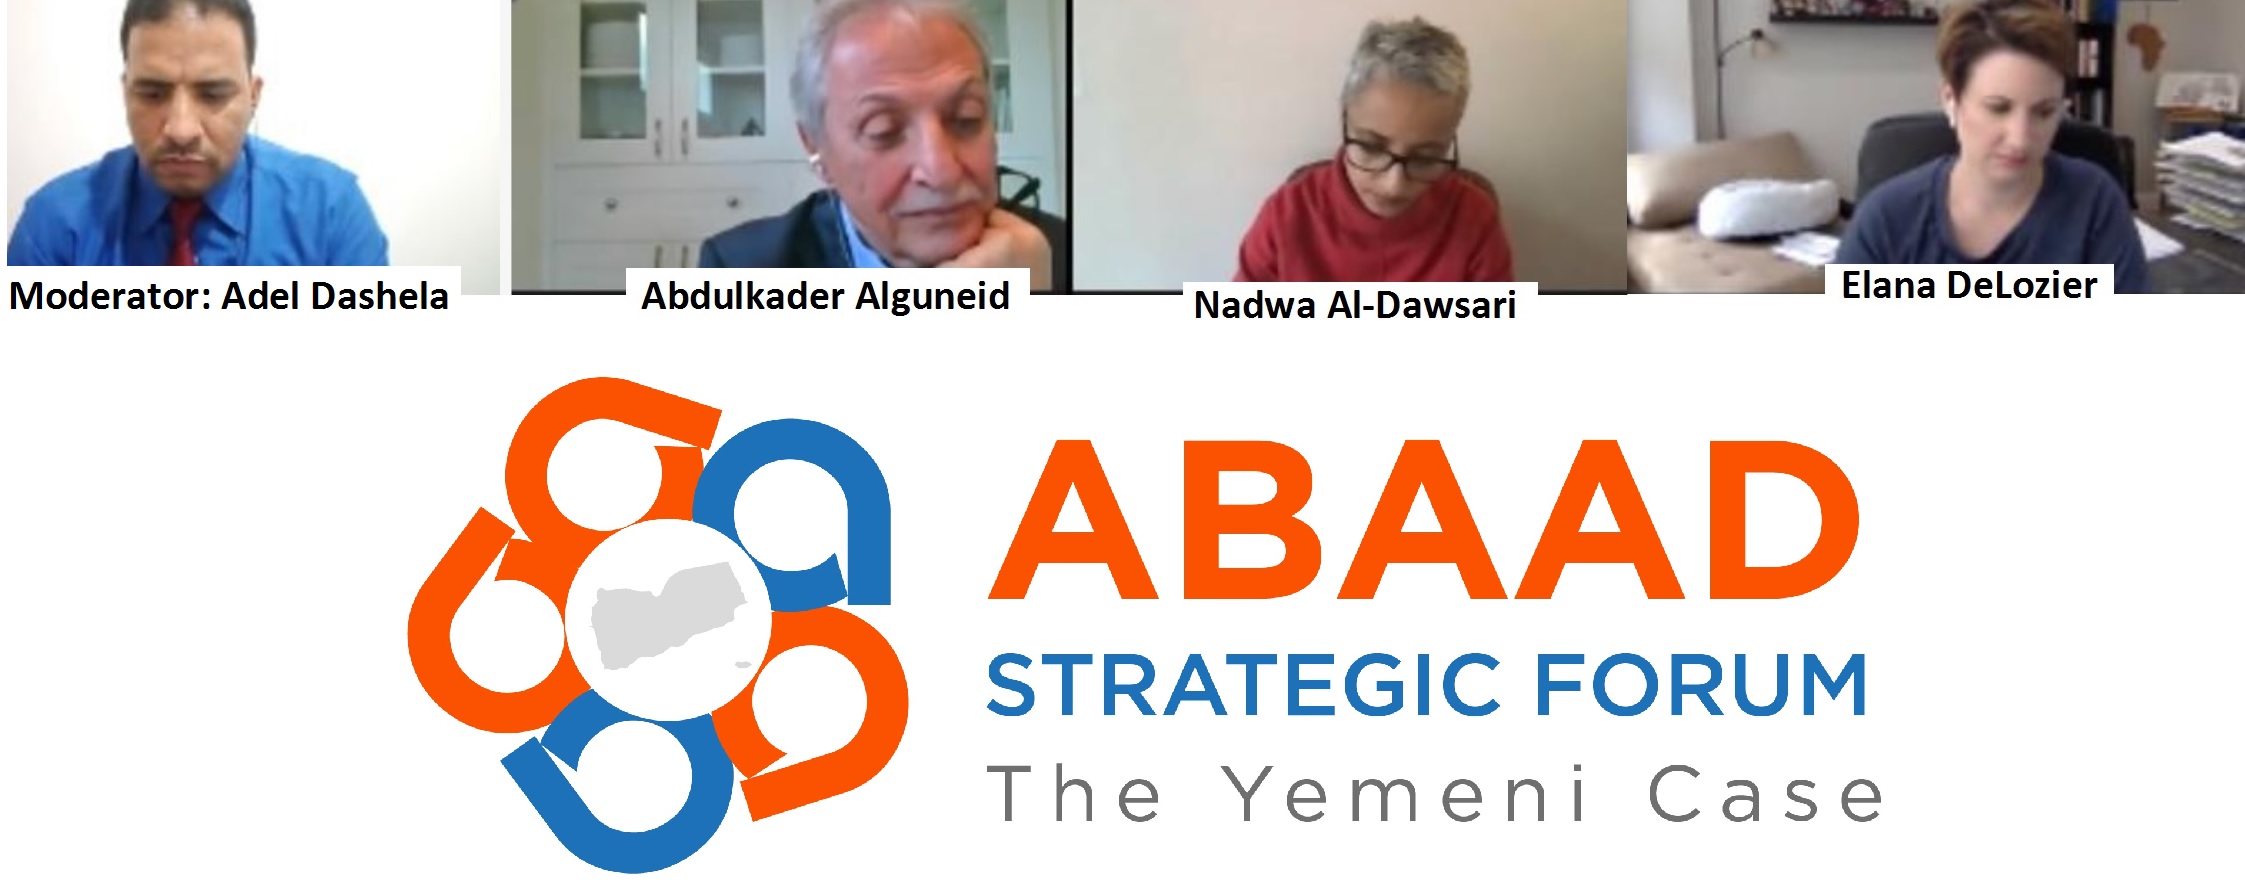  ندوة منتدى ابعاد الاستراتيجي توصي بإيجاد حل للحرب من الداخل اليمني 